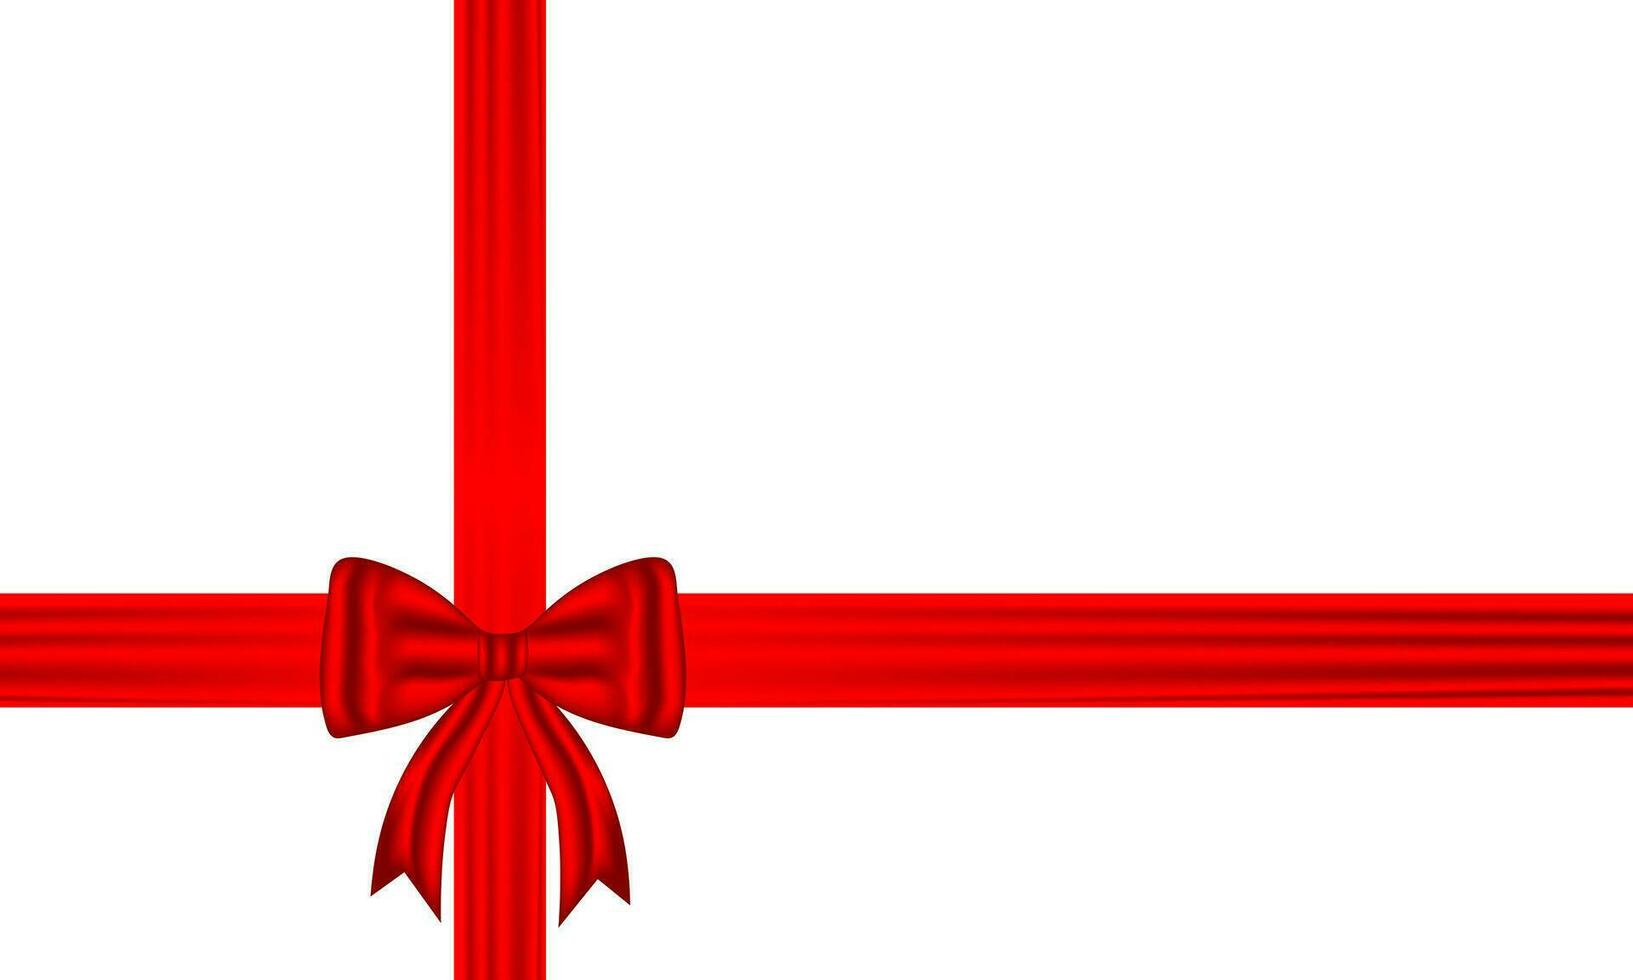 rojo arco y seda lujo elementos con horizontal y vertical cruzar cinta festivo decoración para fiesta elegante regalo tarjeta cinta para decorando Boda tarjetas, o sitio web vector